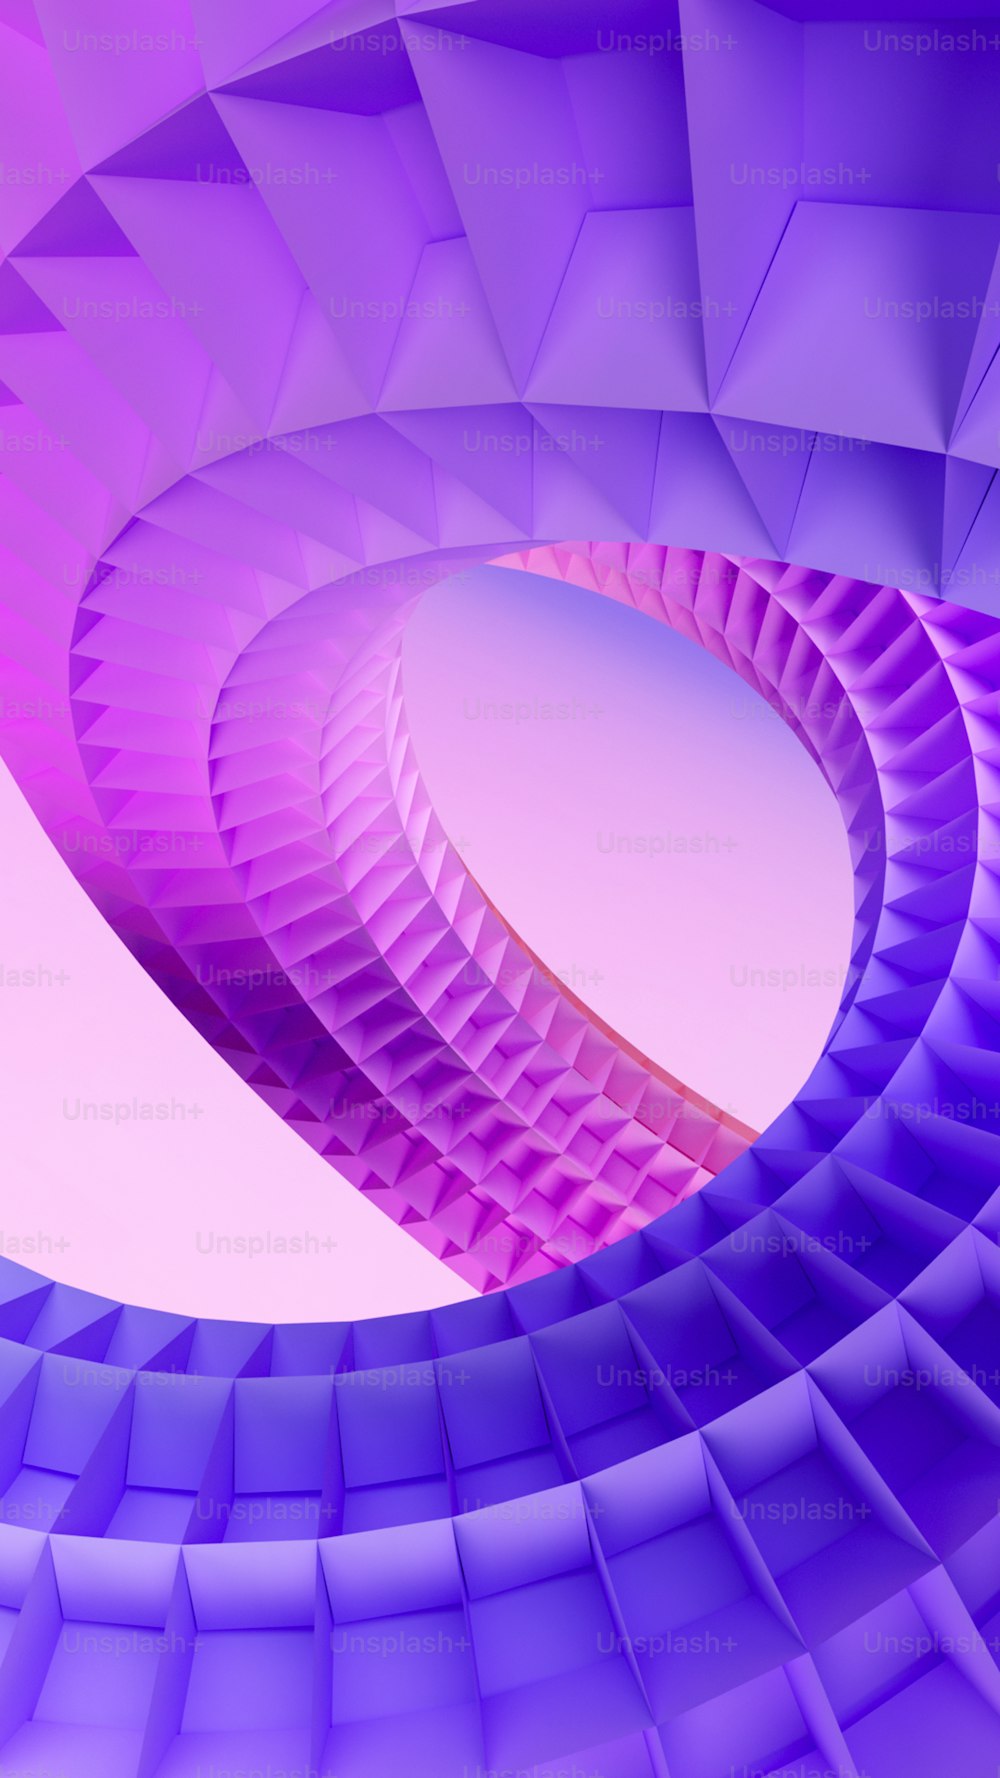 une image abstraite d’une structure en forme de spirale